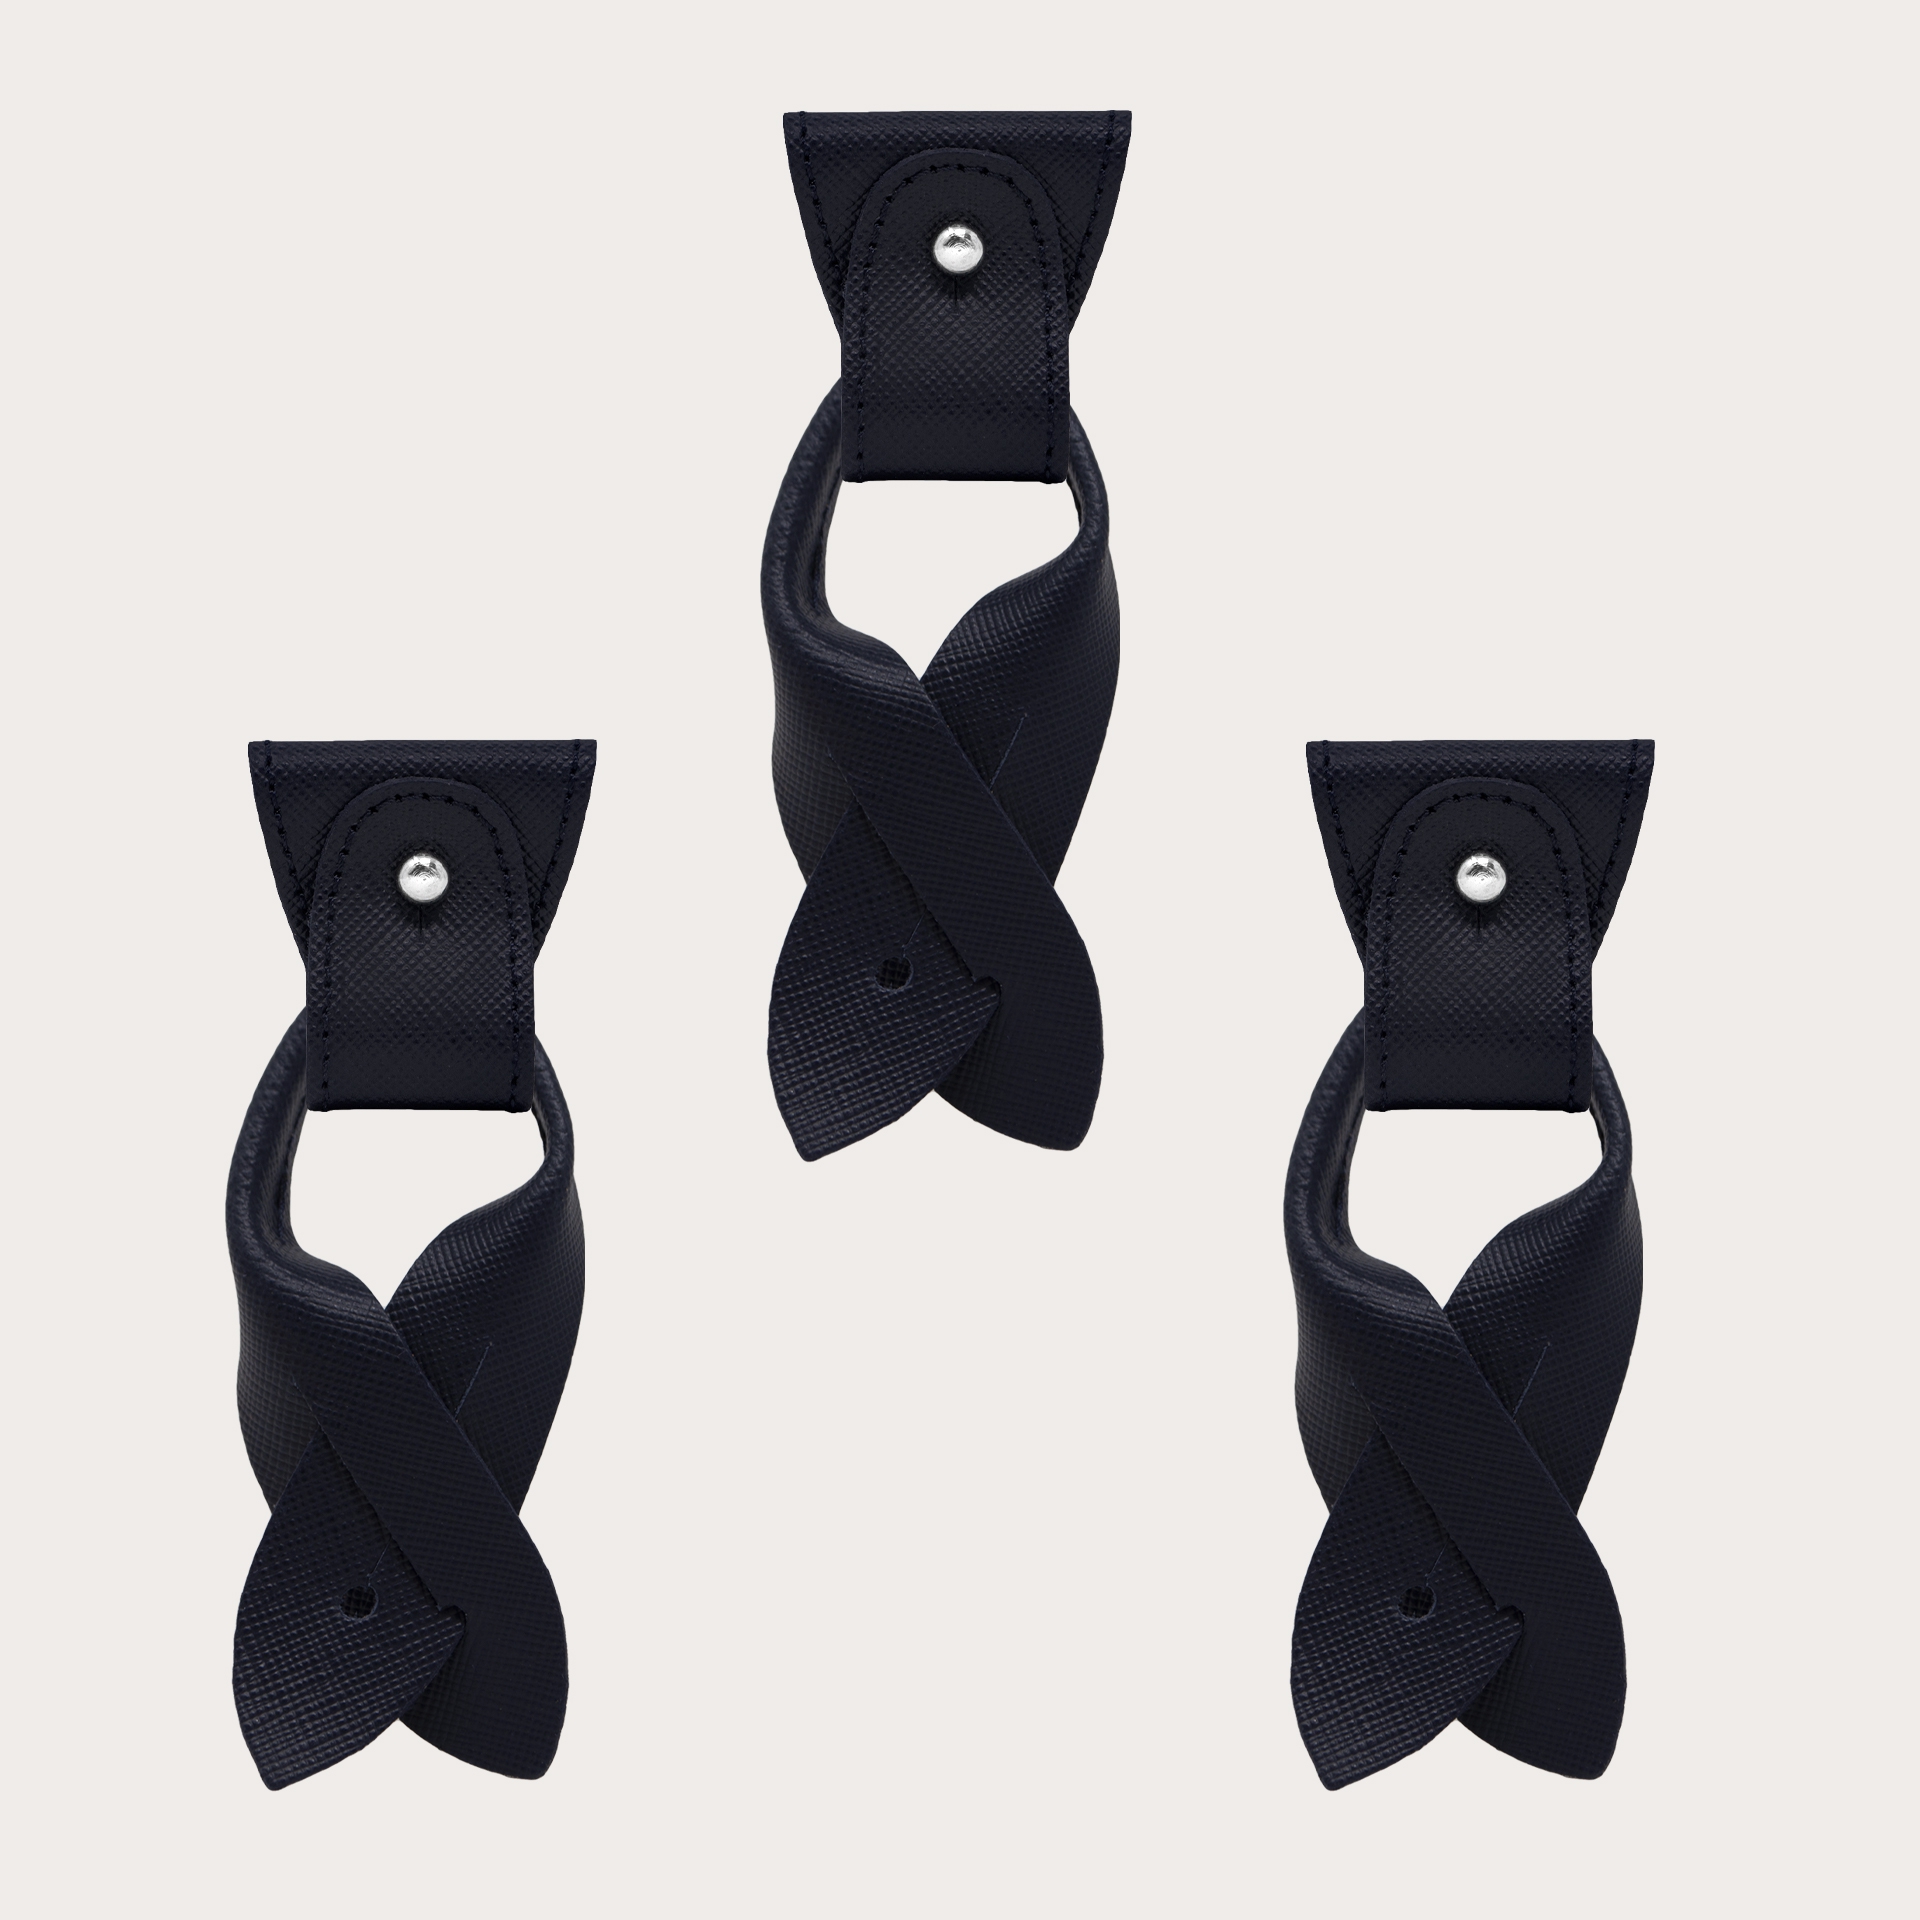 Konvertierbare Enden + terminals für Knöpfe schwarz aus Leder Saffiano